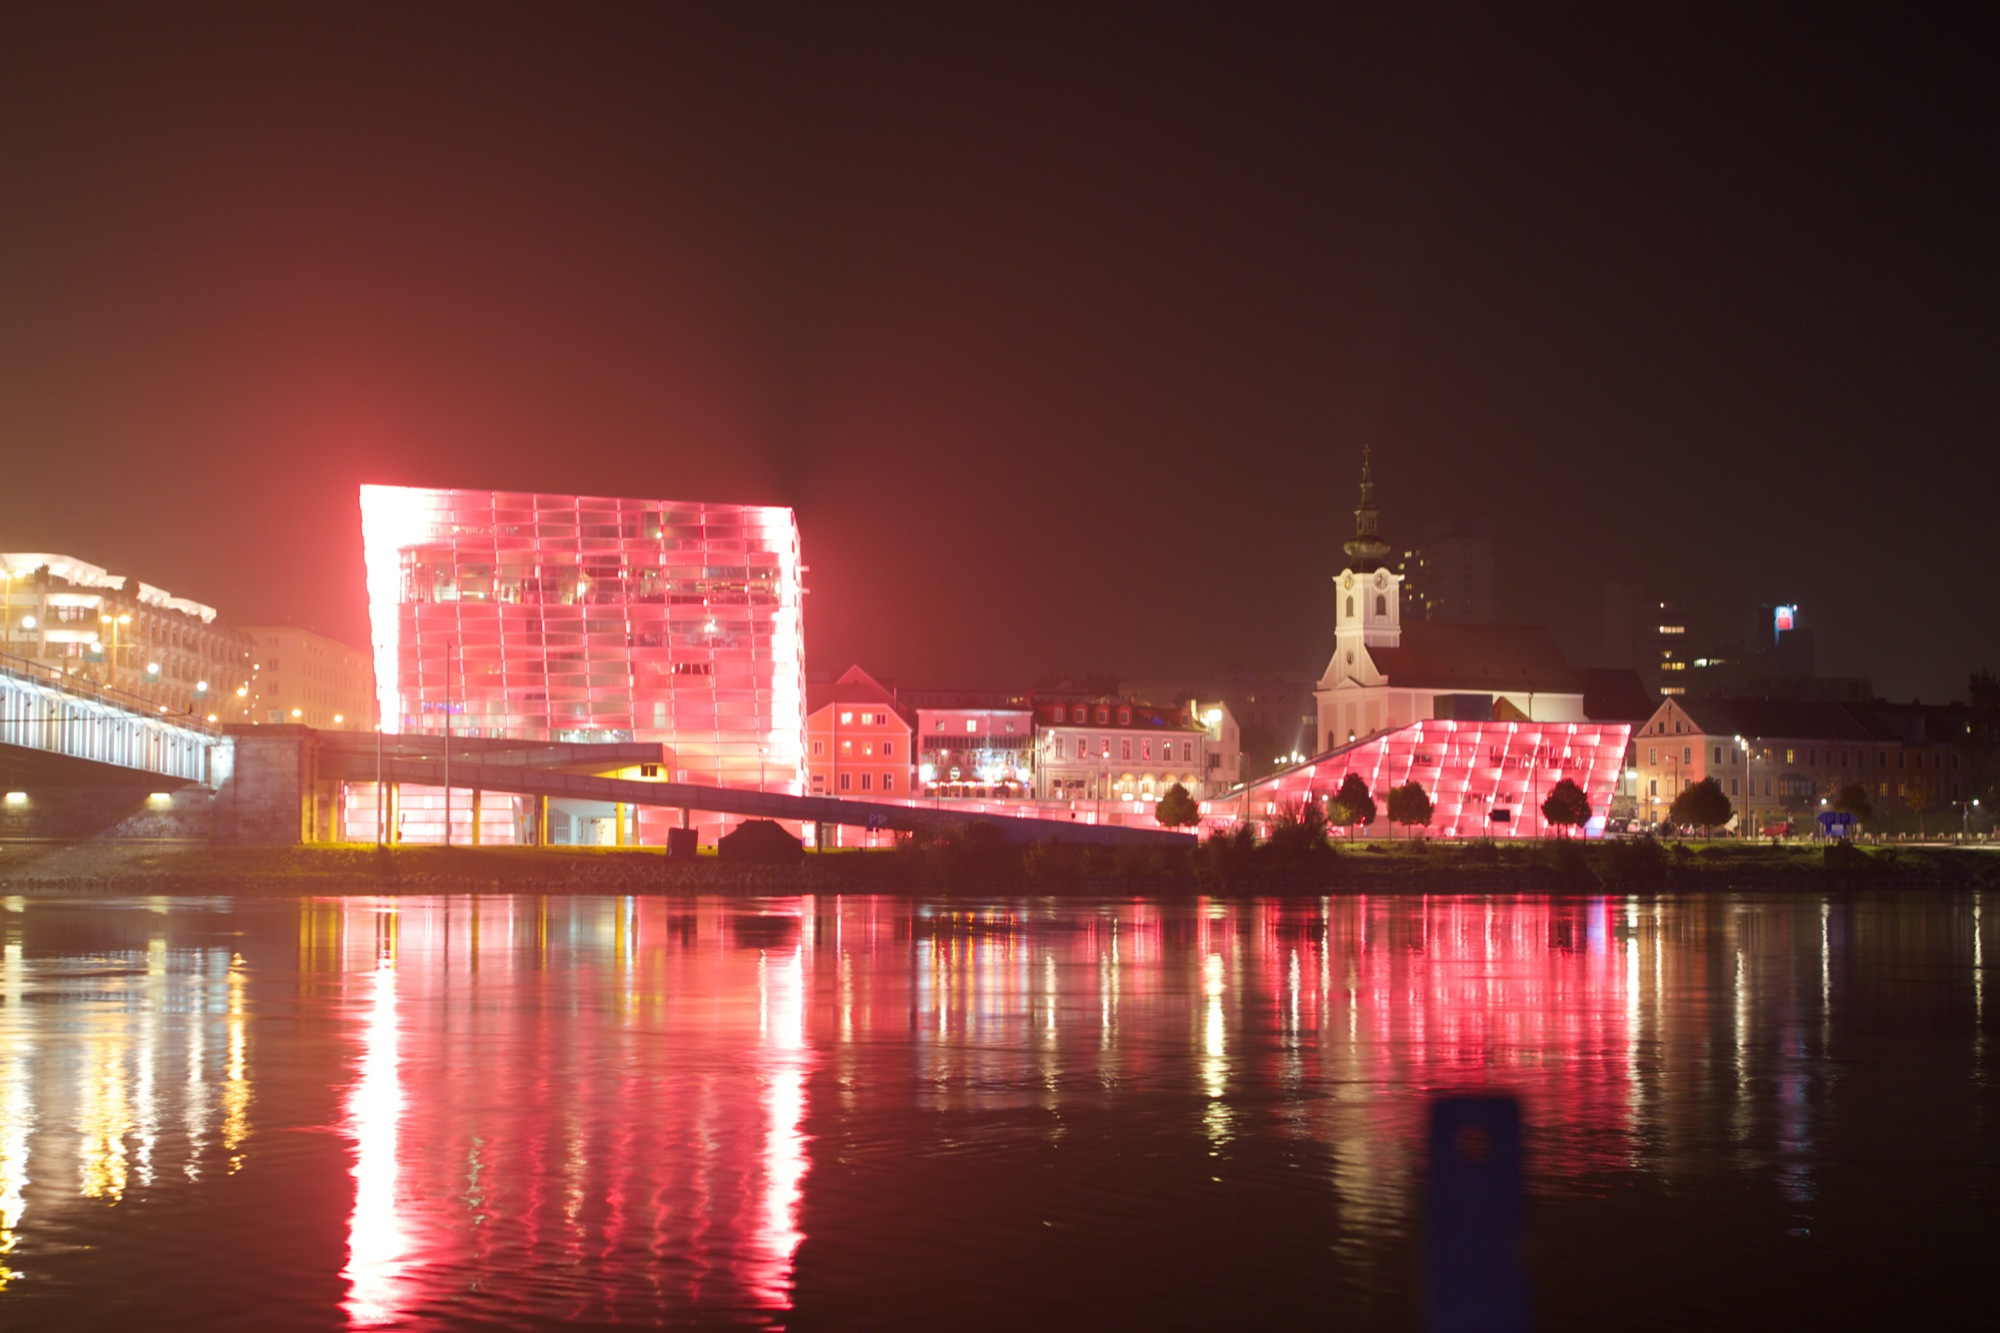 das Ars Electronica Center leuchtet nachts in allen Farben, hier rot